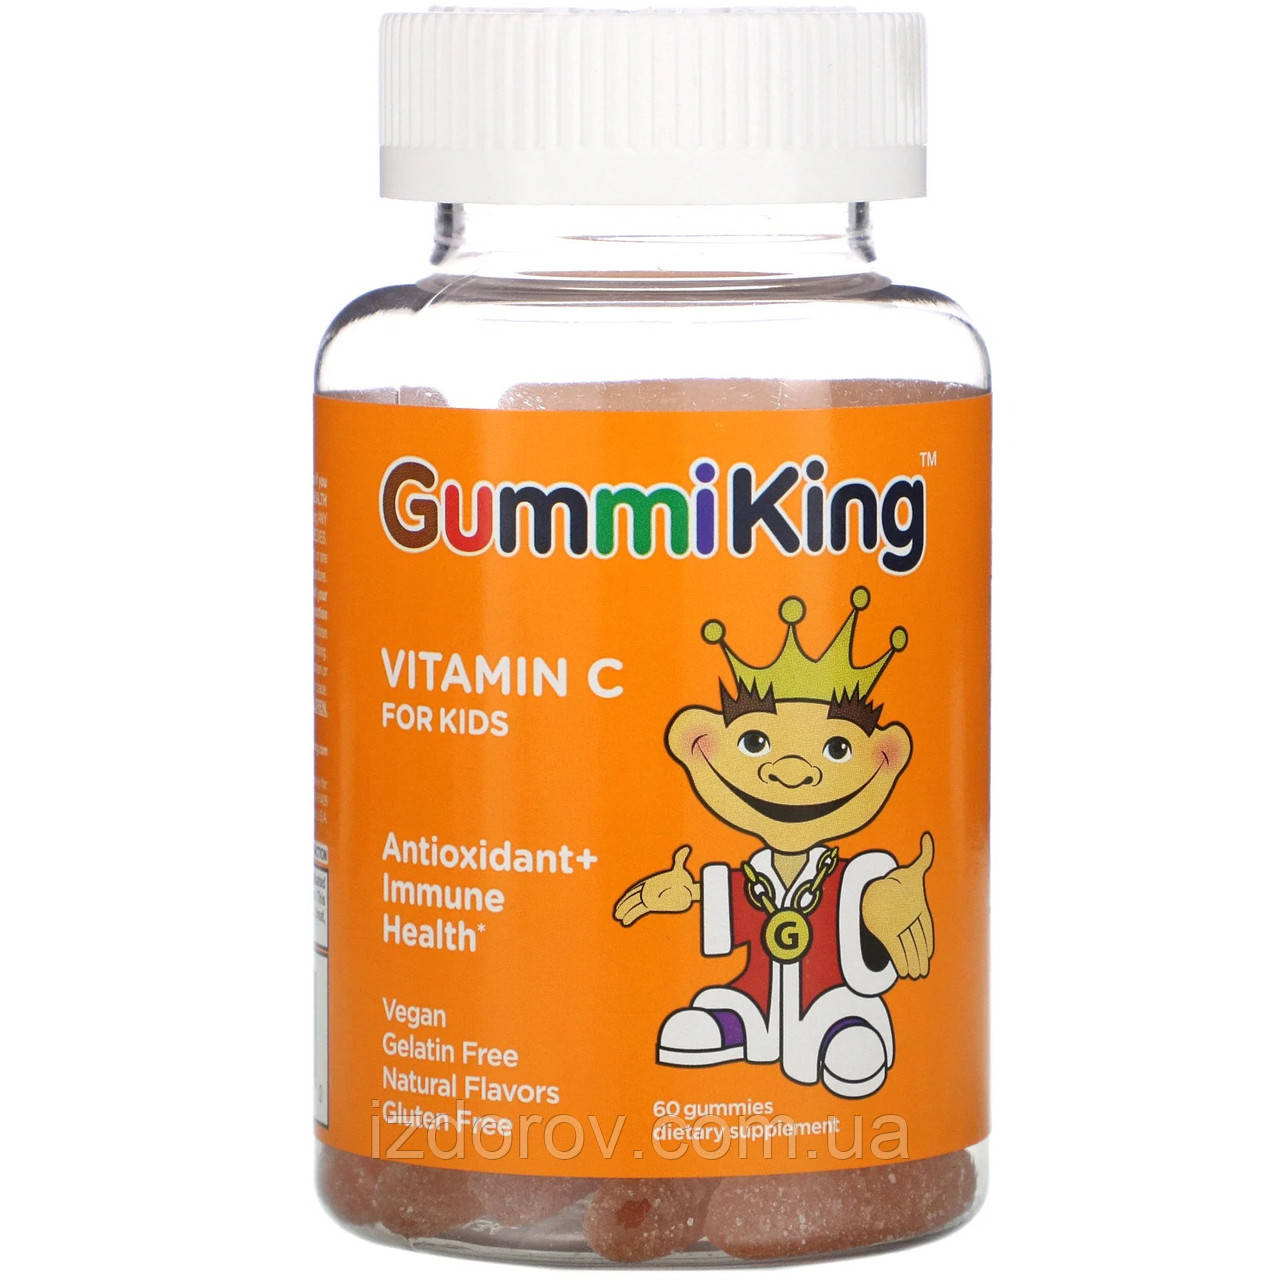 Вітамін C для дітей GummiKing Vitamin C for Kids антиоксидант для імунітету 60 жувальних таблеток